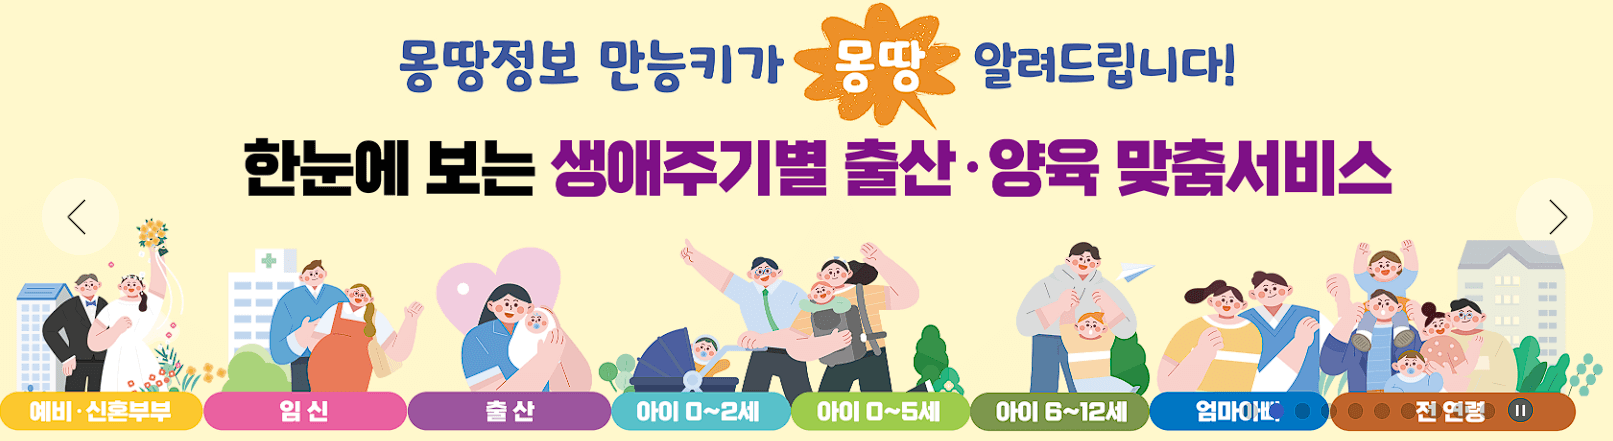 서울시 출산지원금 및 무주택 가구 주거비 지원금 신청 방법 안내